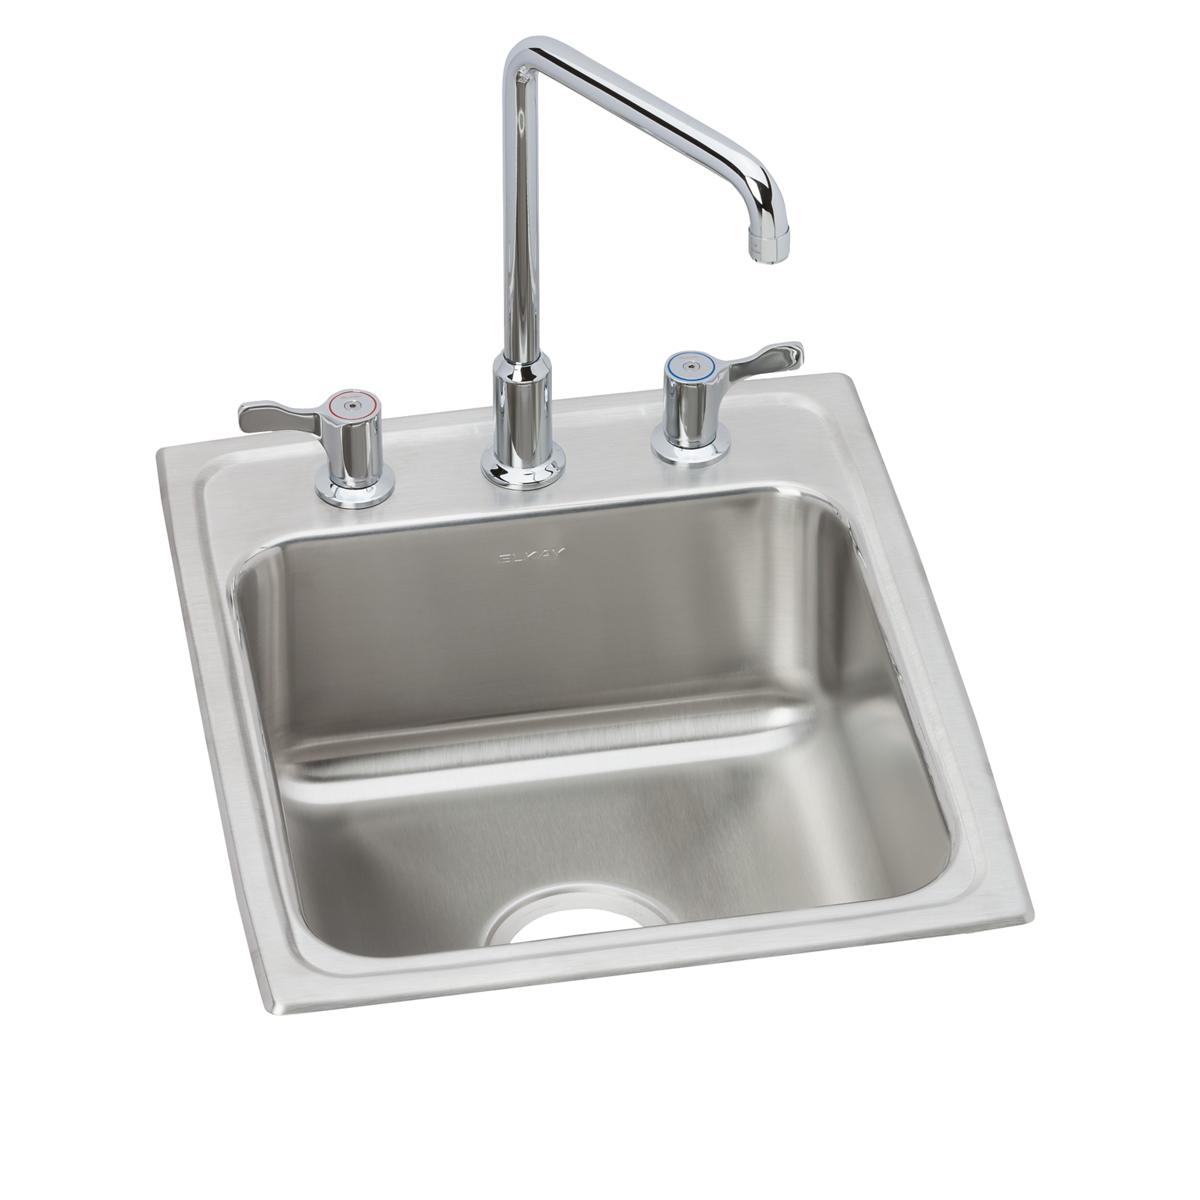 Elkay Stainless Steel Single Bowl Drop-in Sink 1375812